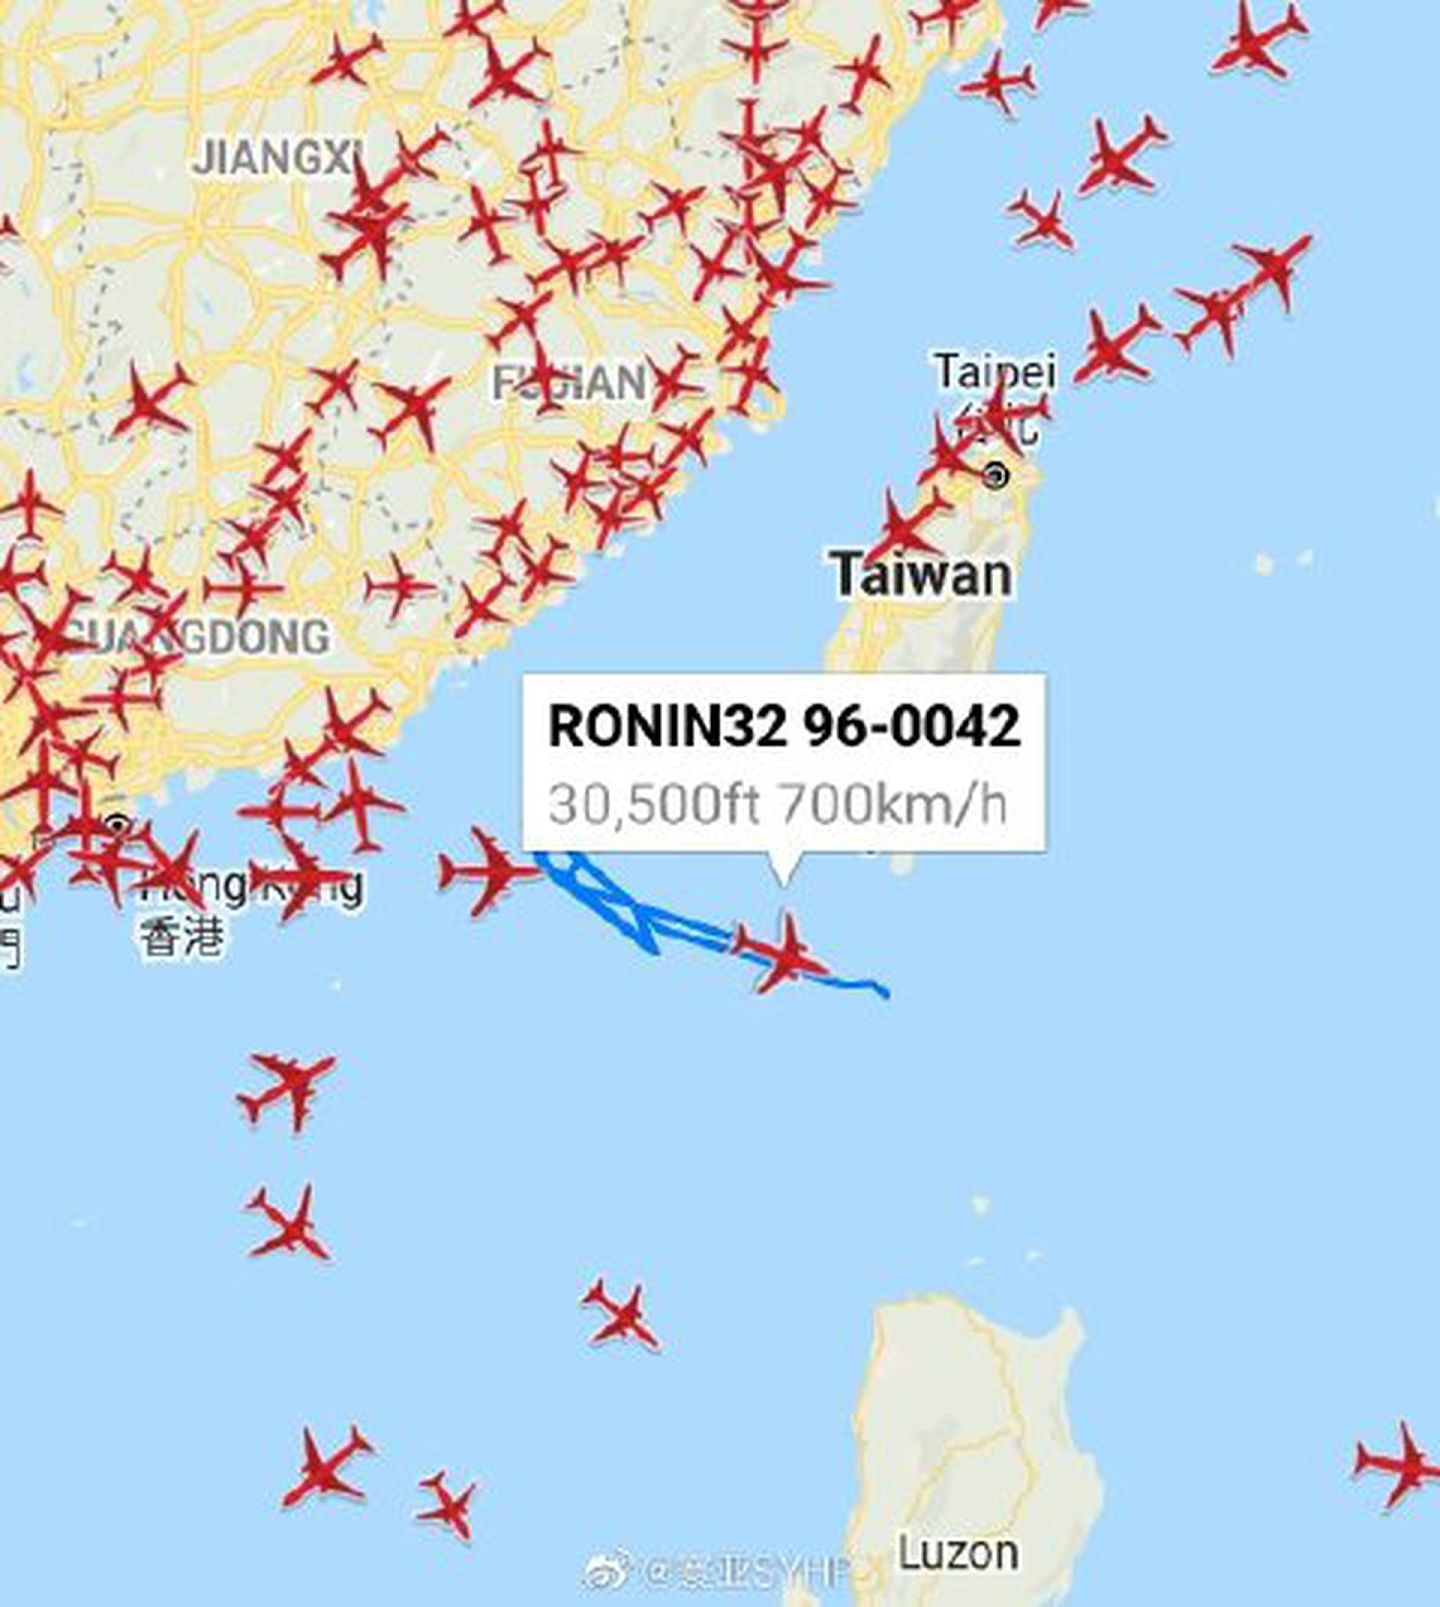 8月5日，美国空军一架E-8C “联合星”预警机逼近广东，从巴士海峡进入南海。（微博@寰亚SYHP）